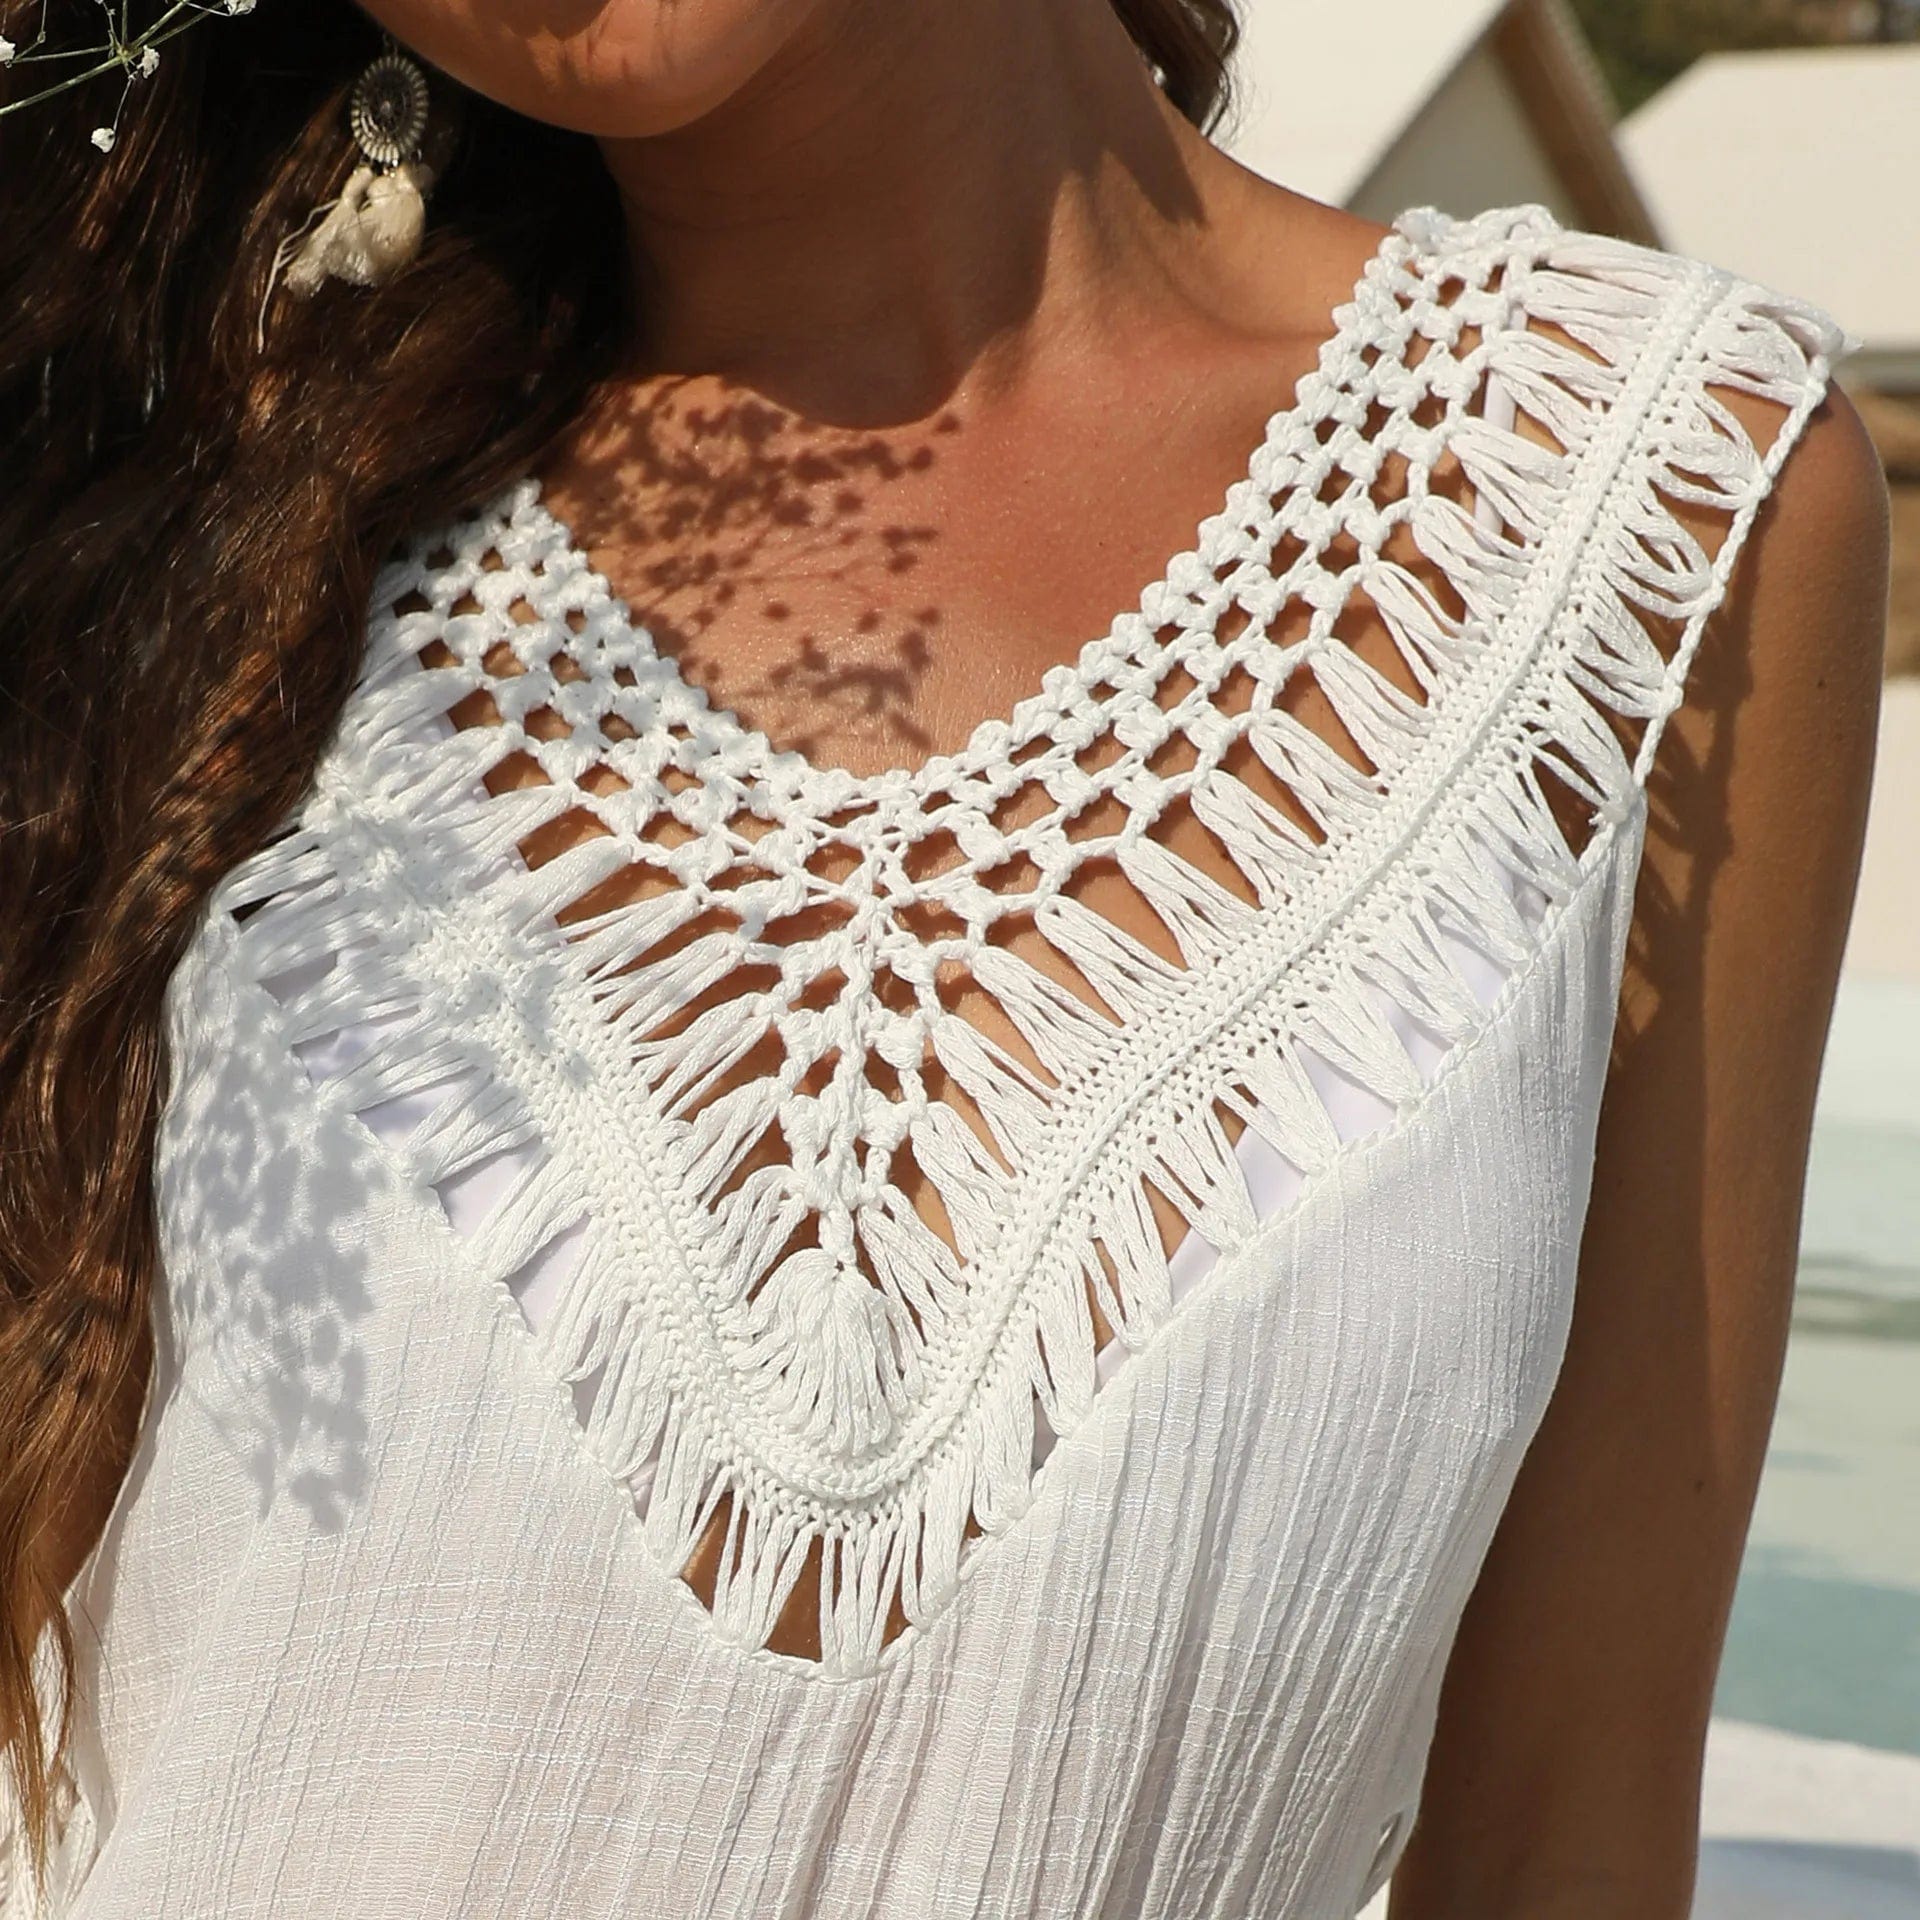 White Crochet Cover-up Bikini Dress